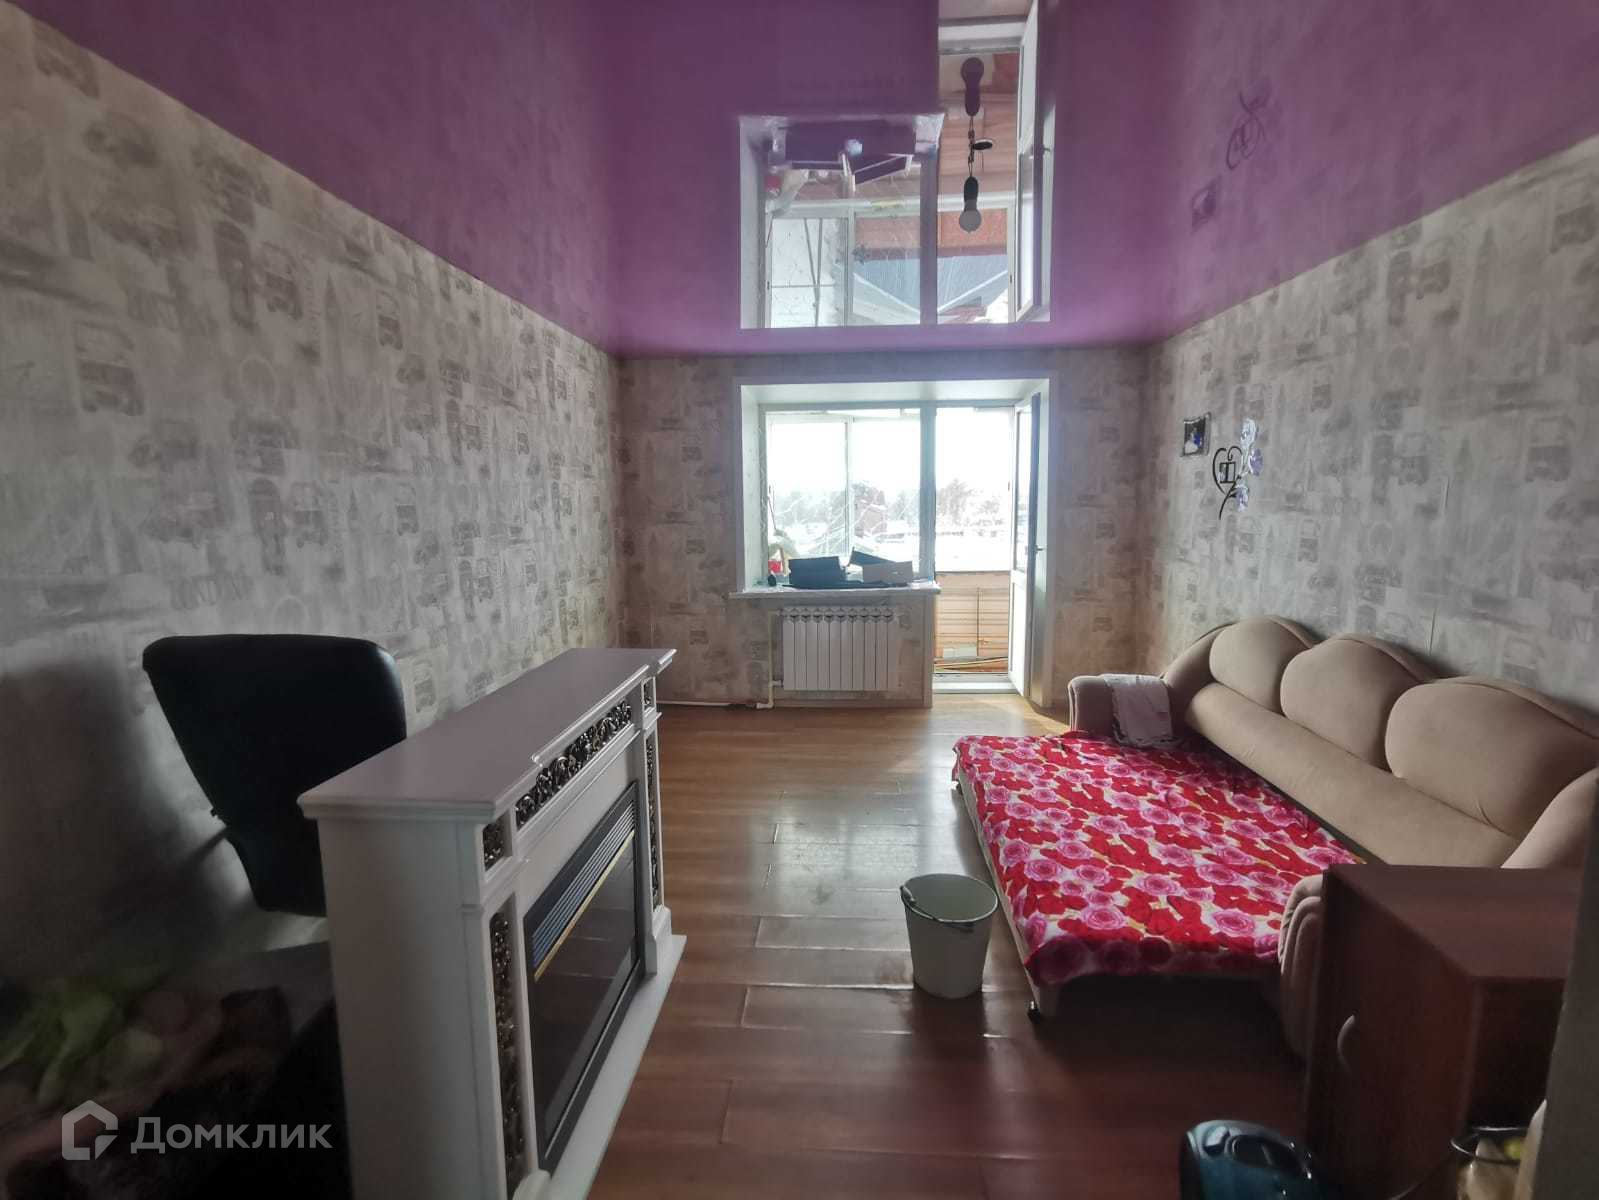 Снять квартиру в николаевске